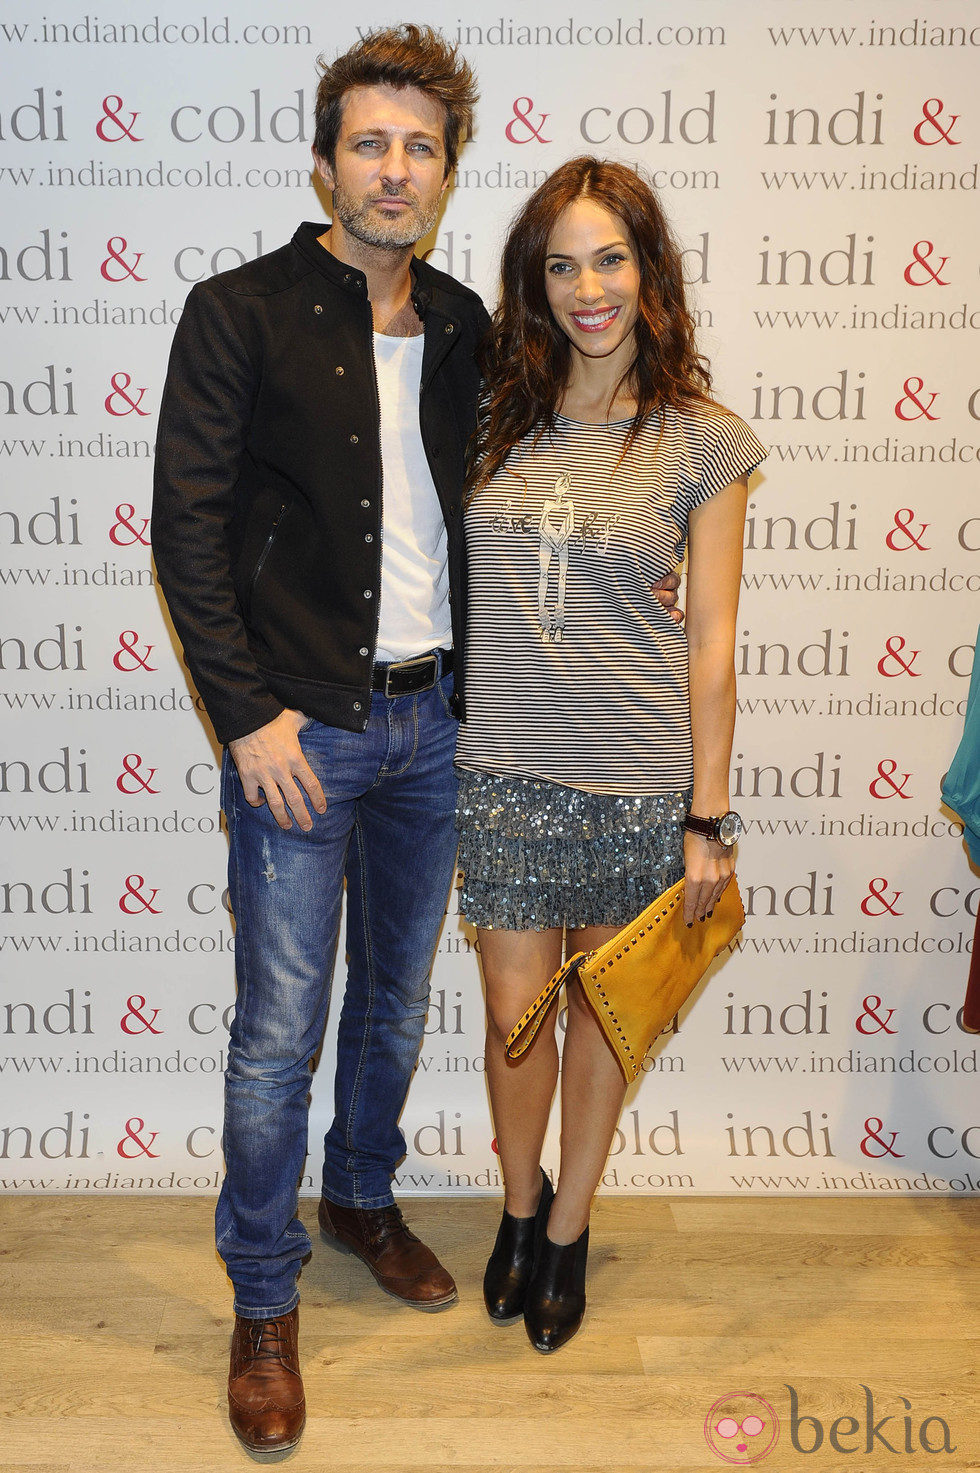 Nerea Garmendia y Jesús Olmedo en la inauguración de la tienda Indi & Cold en Madrid